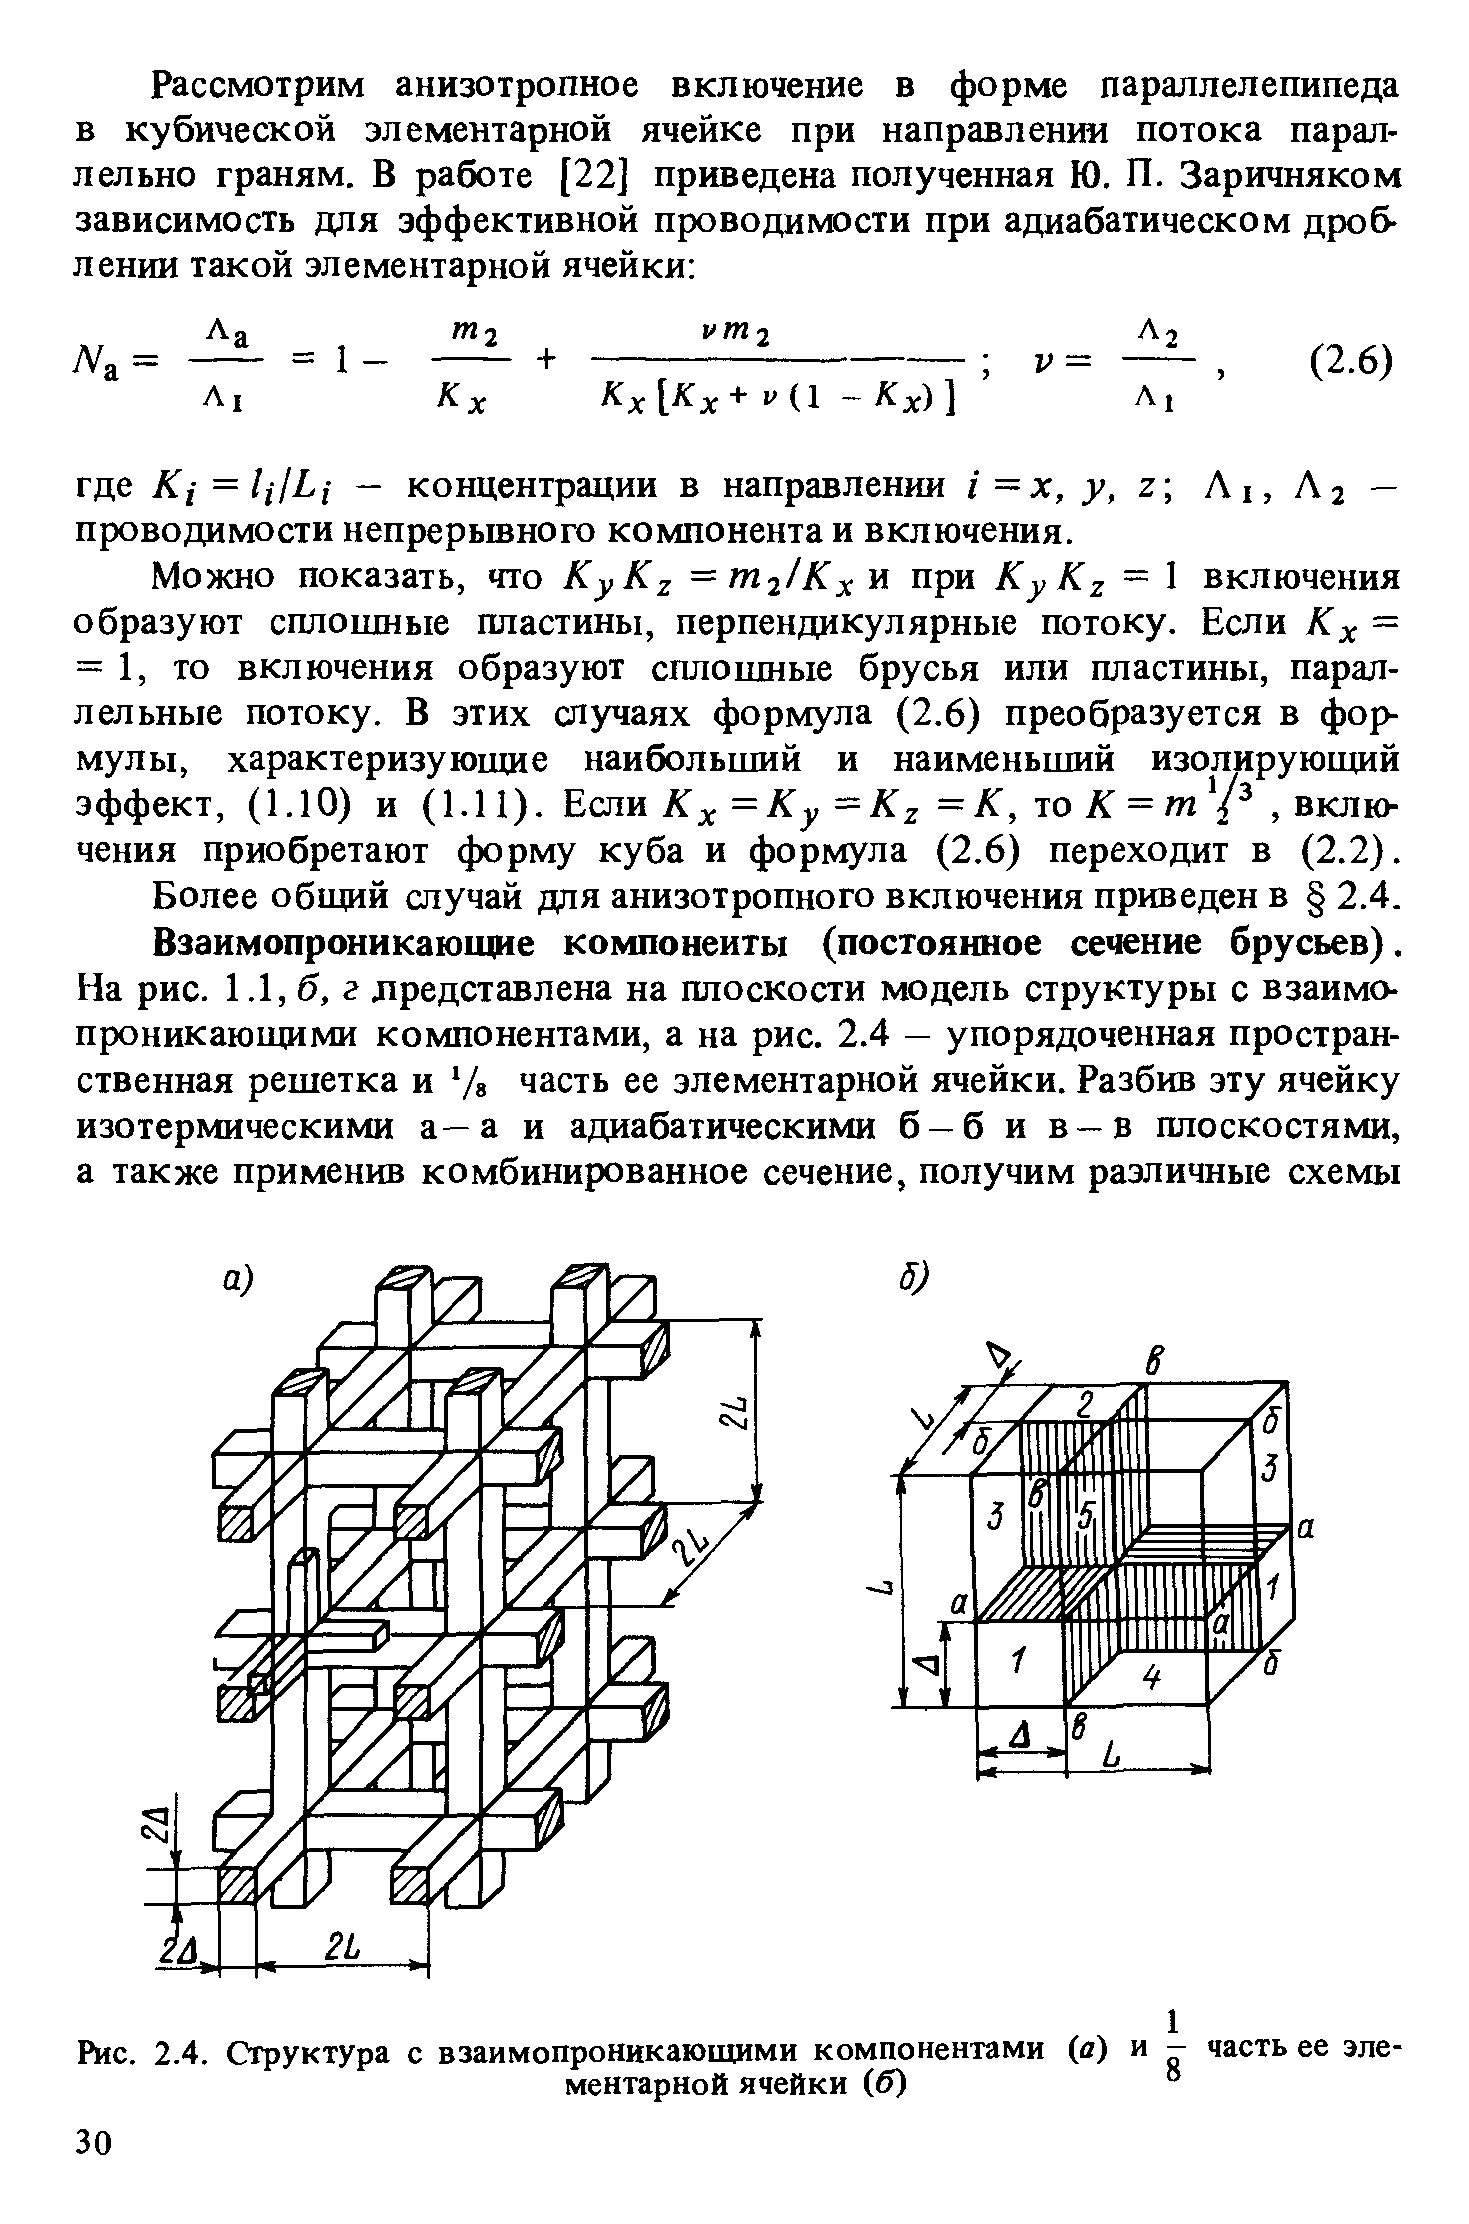 Рис. 2.4. Структура с взаимопроникающими компонентами (а) и - часть ее элементарной ячейки (б) °
